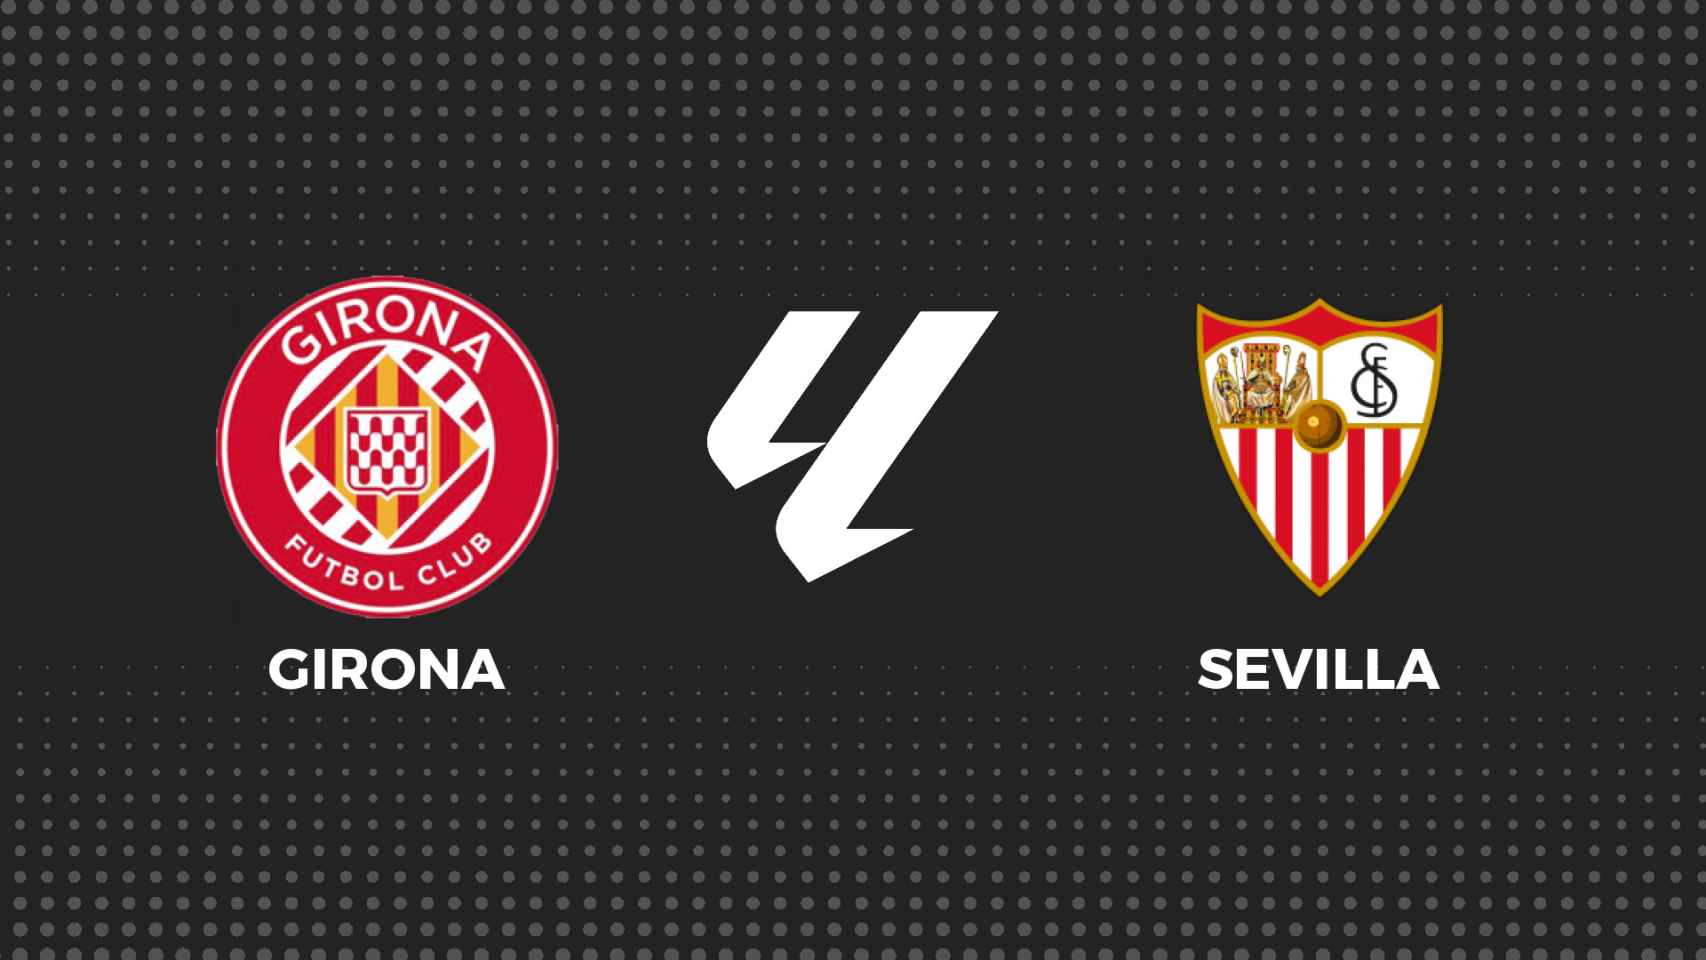 Sevilla fútbol club contra girona futbol club